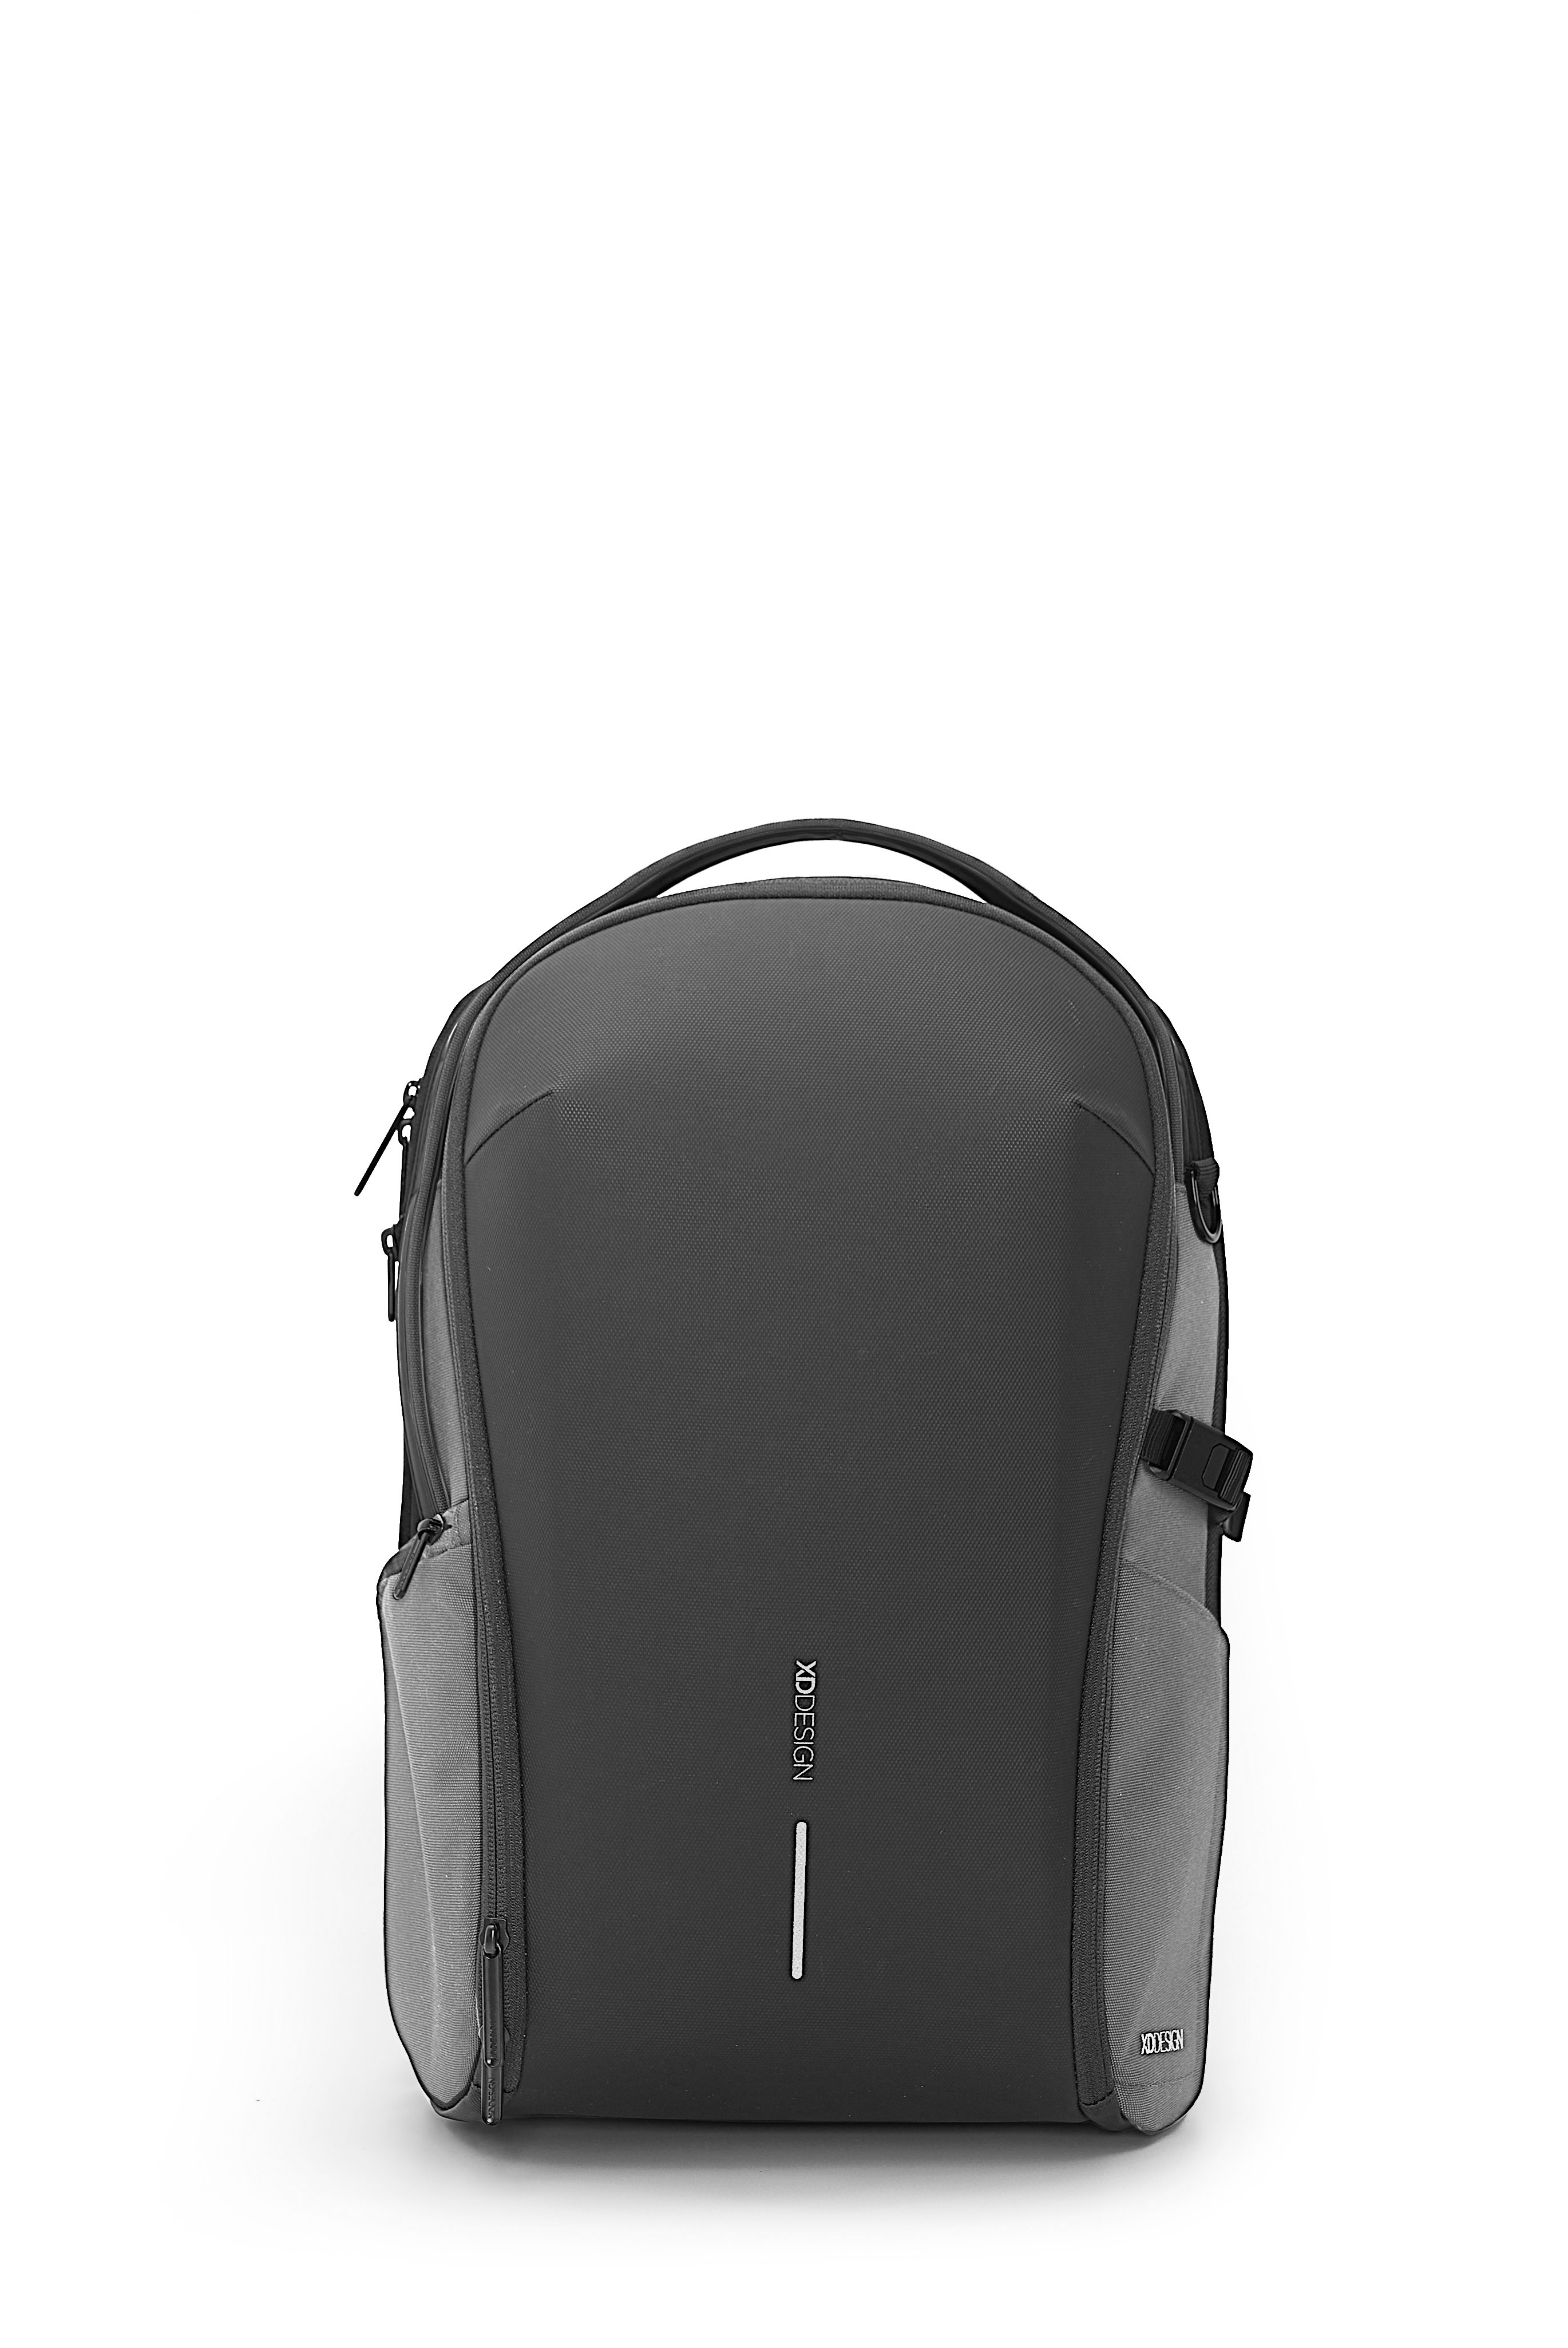 XD Design - Bobby Bizz backpack - Grey (P705.932) - Bagasje og reiseutstyr